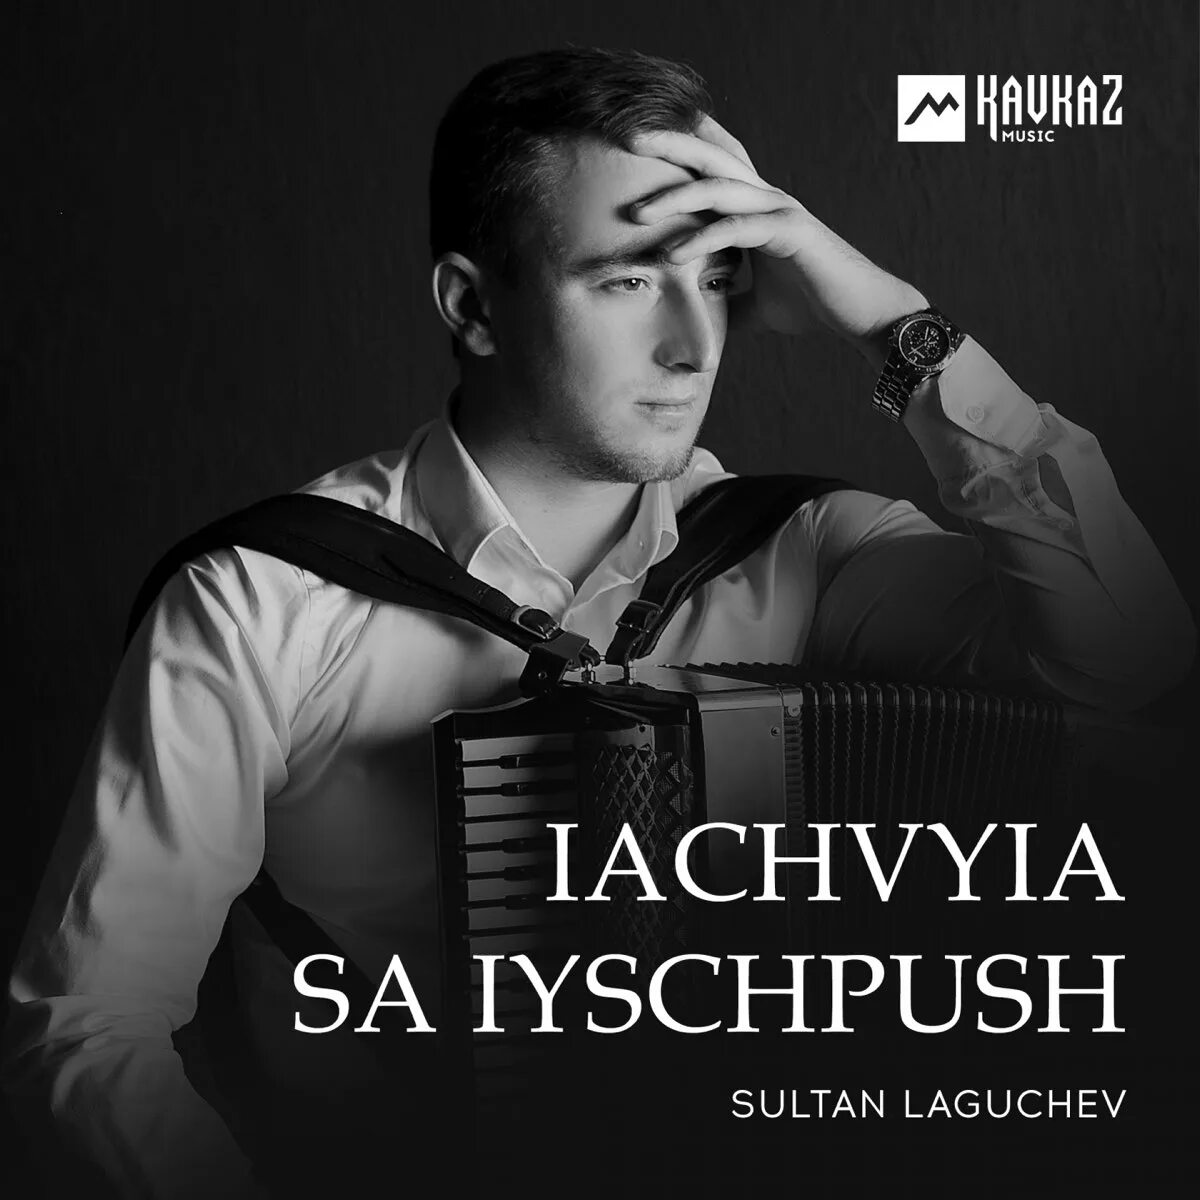 Лагучев. Султан Лагучев. Надылра. Илья Лагучев. Султан Лагучев обложка альбома. Султан Логачев певец.